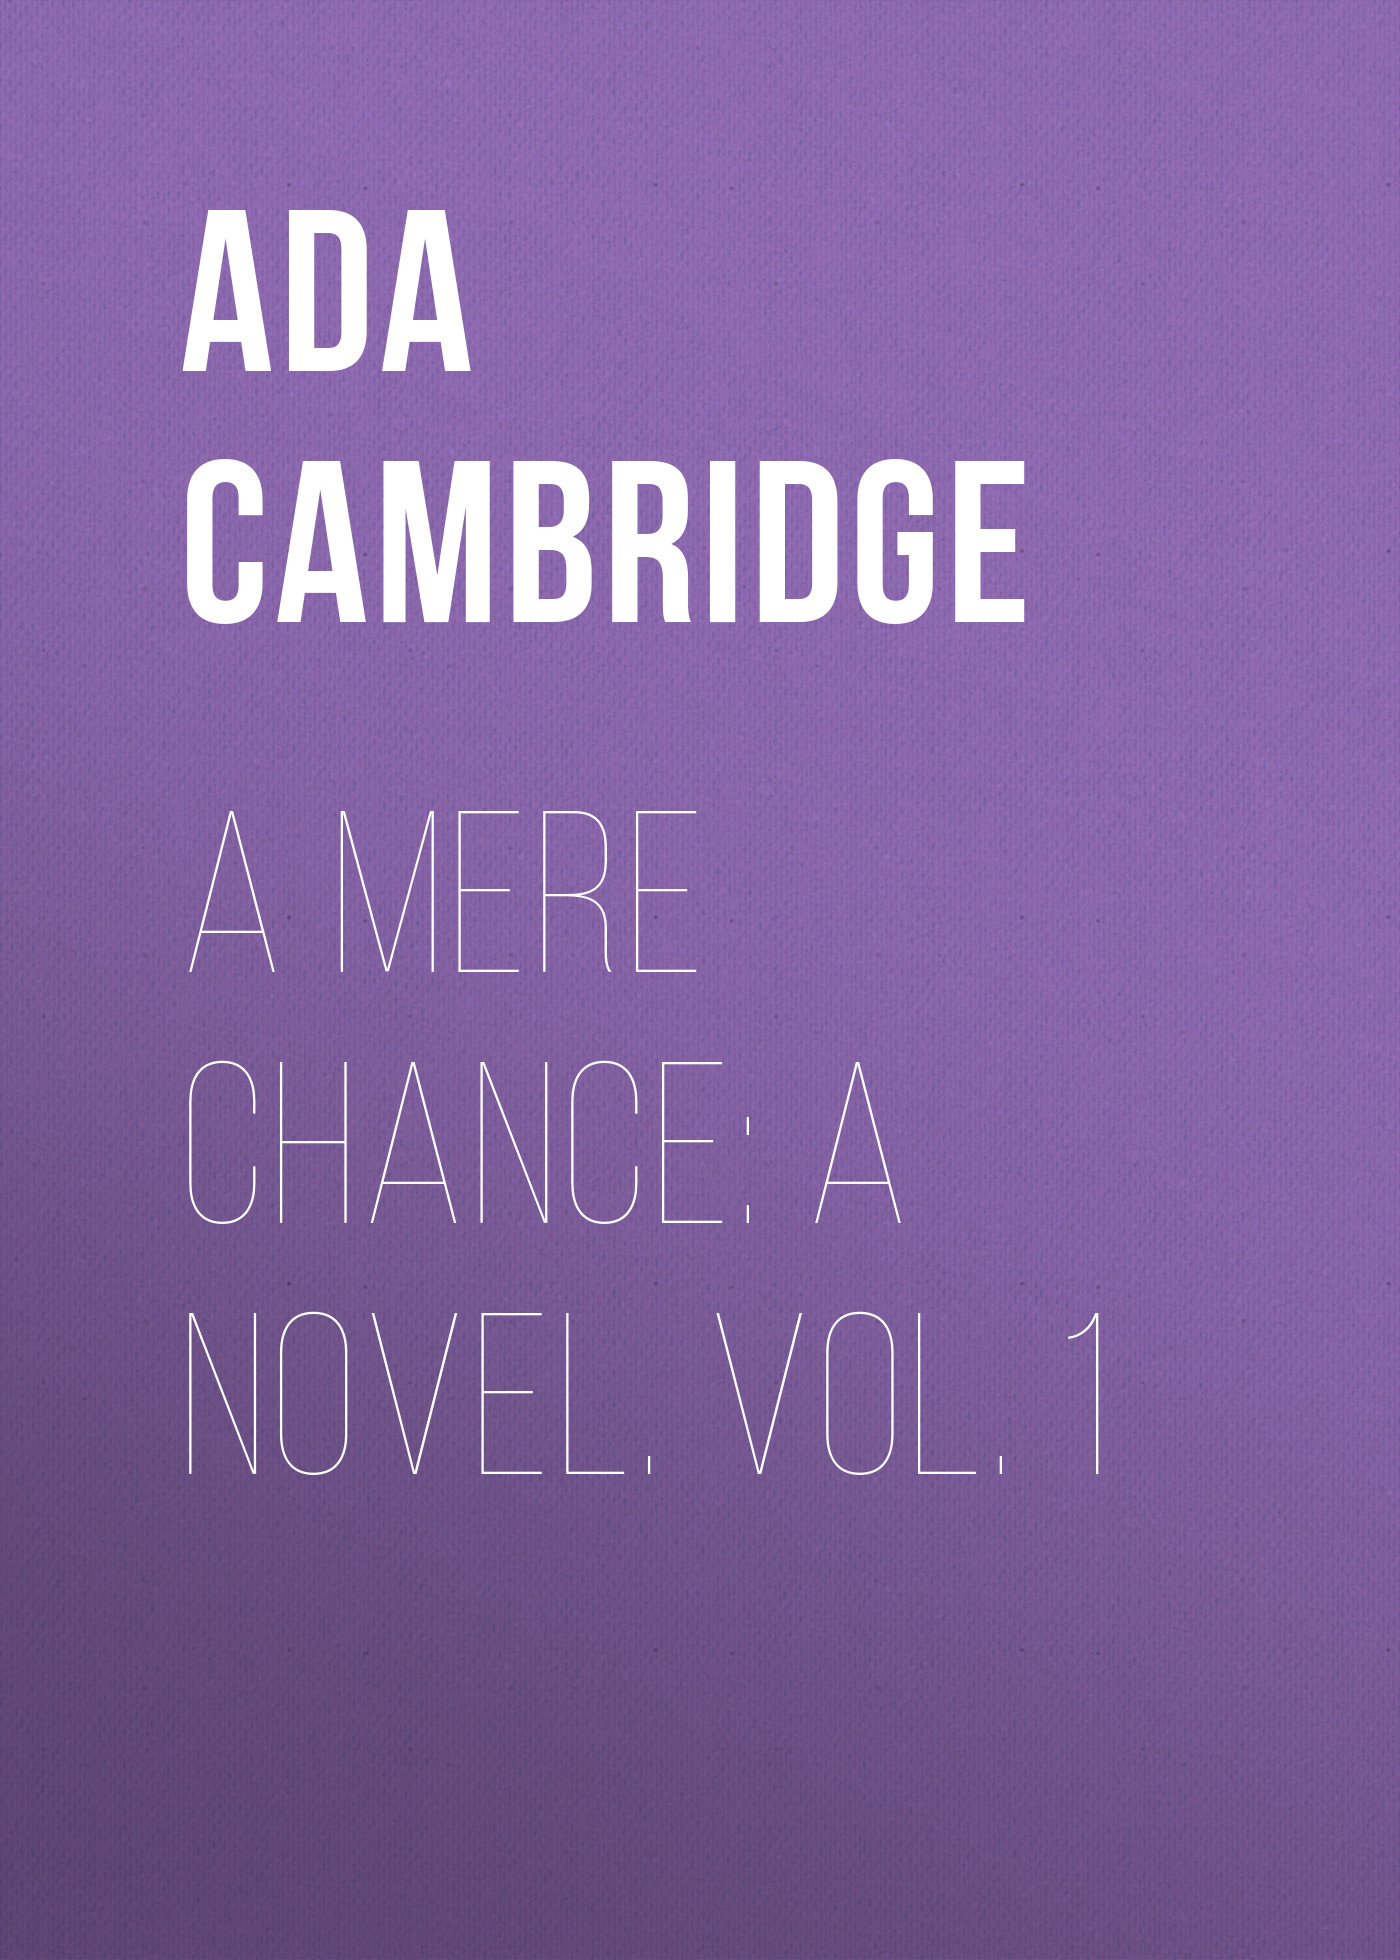 Книга A Mere Chance: A Novel. Vol. 1 из серии , созданная Ada Cambridge, может относится к жанру Зарубежная старинная литература, Зарубежная классика. Стоимость электронной книги A Mere Chance: A Novel. Vol. 1 с идентификатором 24170844 составляет 0.90 руб.